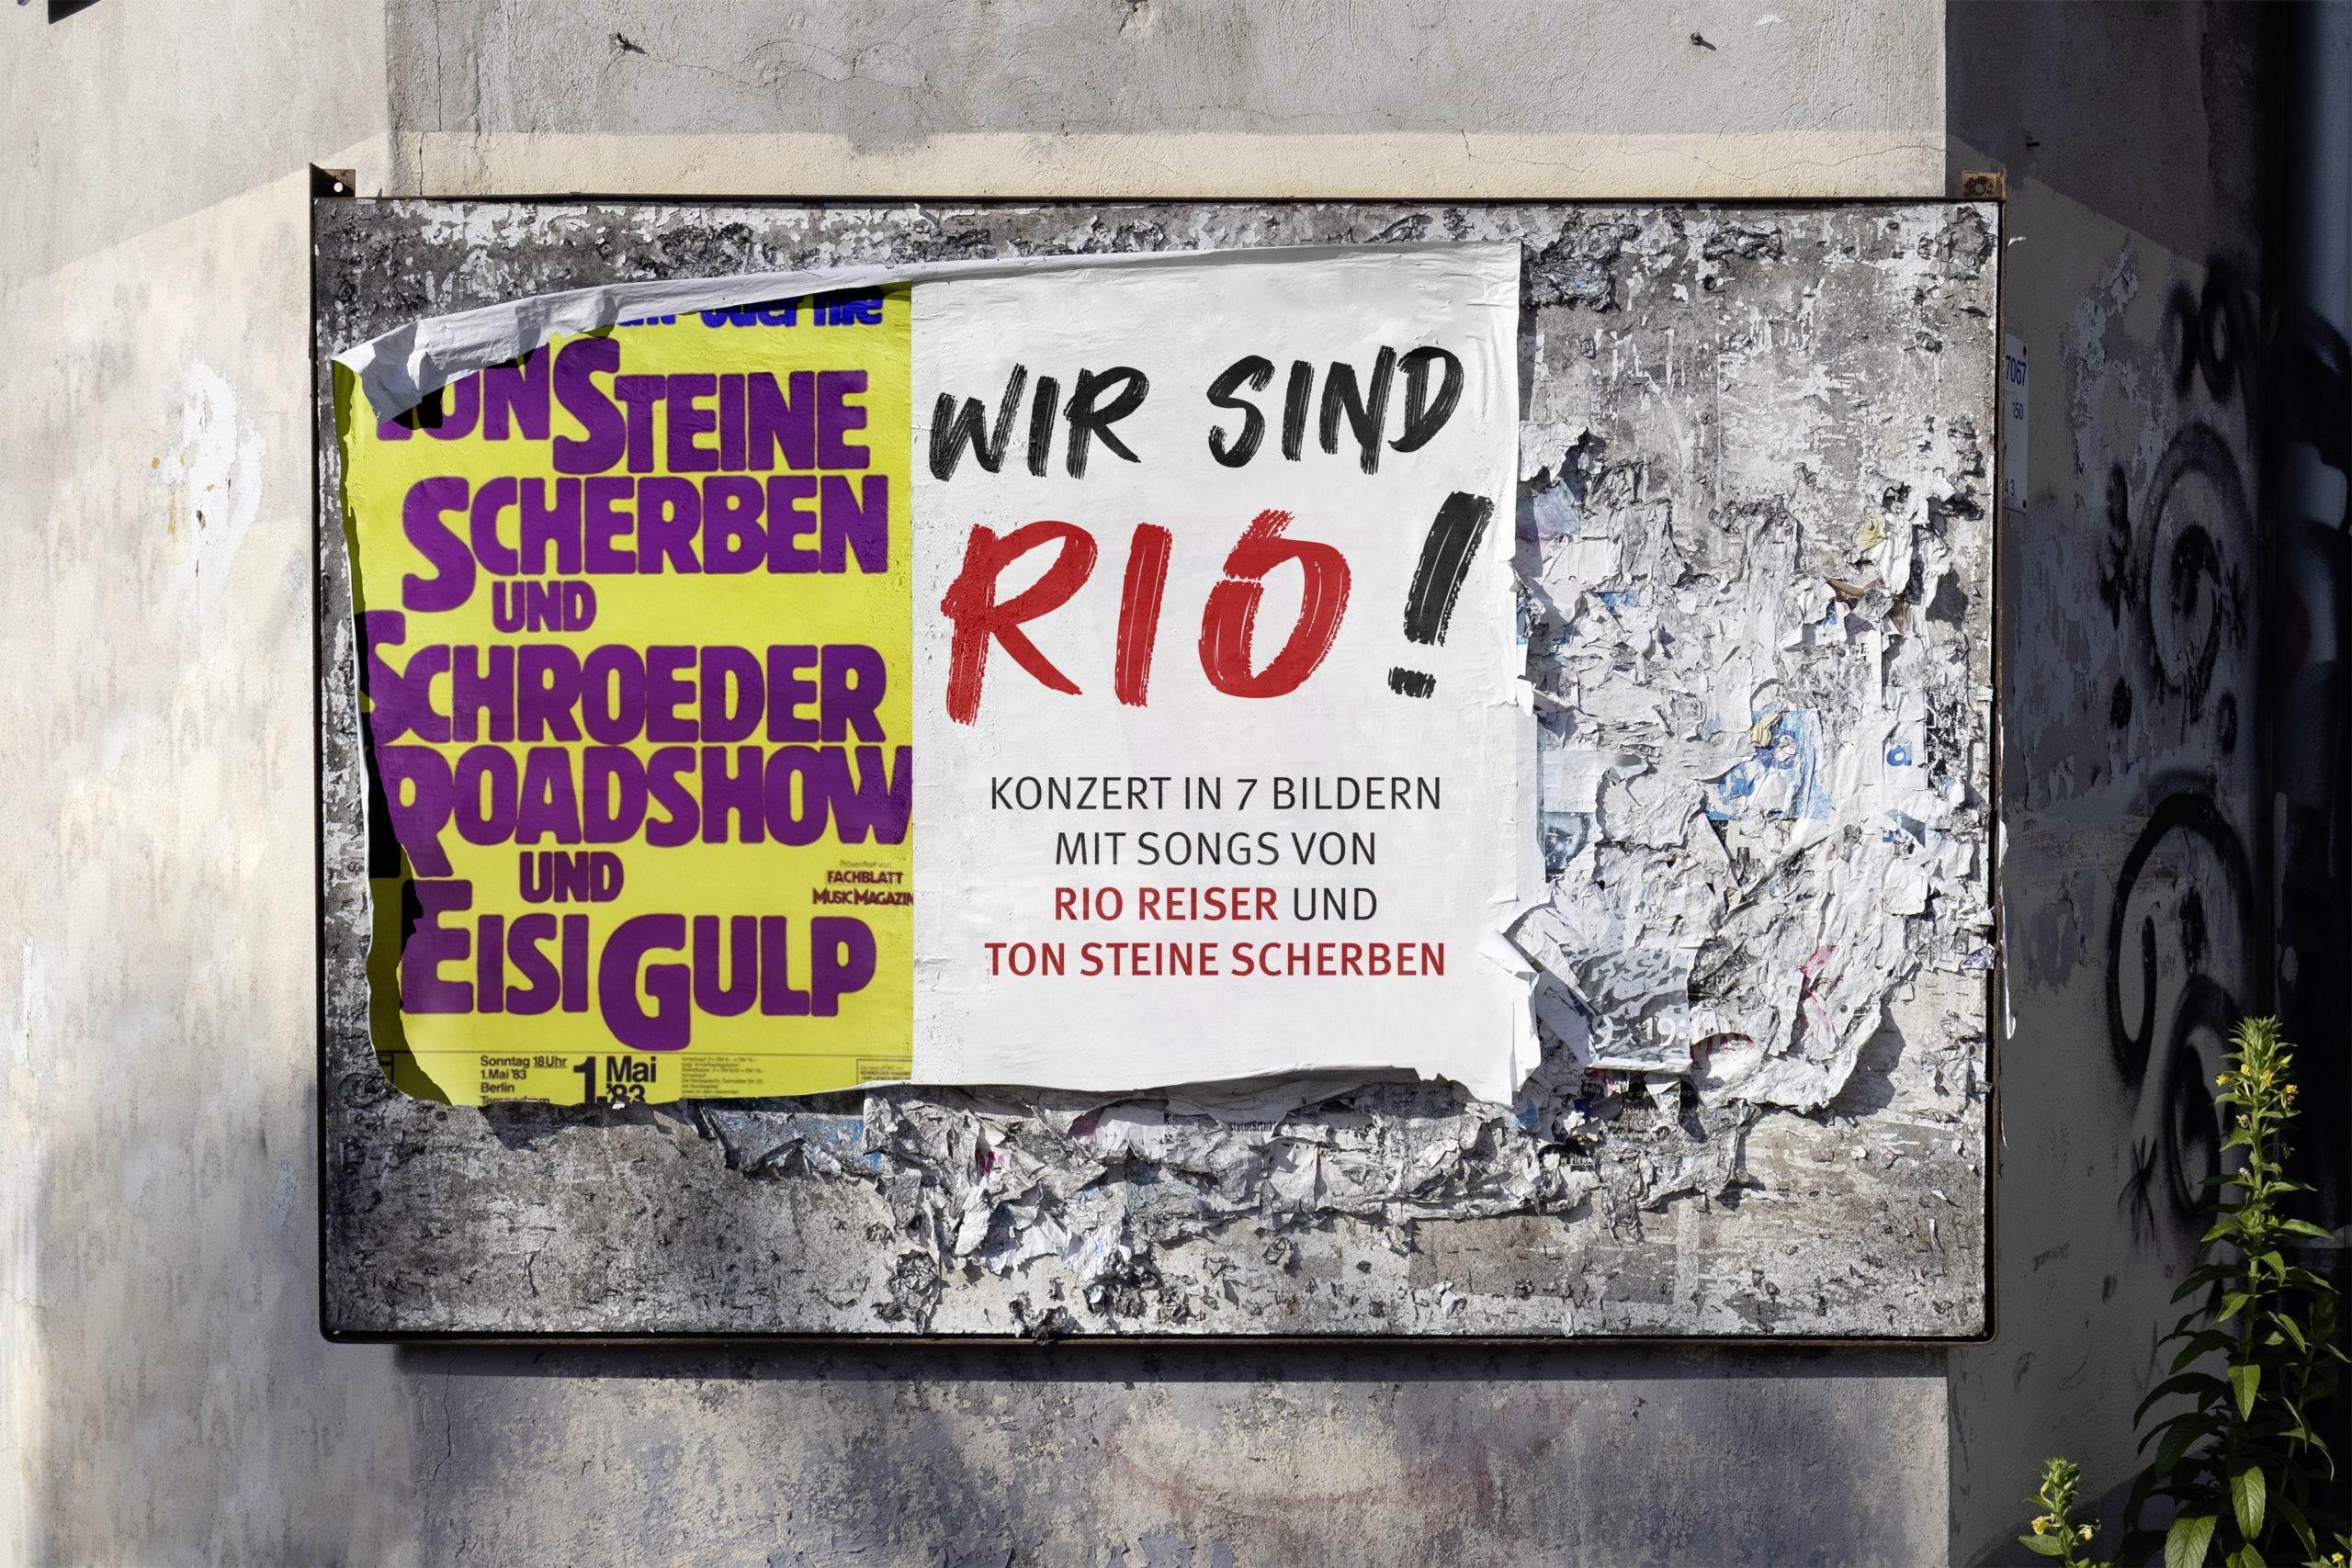 Konzertpublikum gesucht: Wer war 1996 bei Rio Reiser in Plauen?